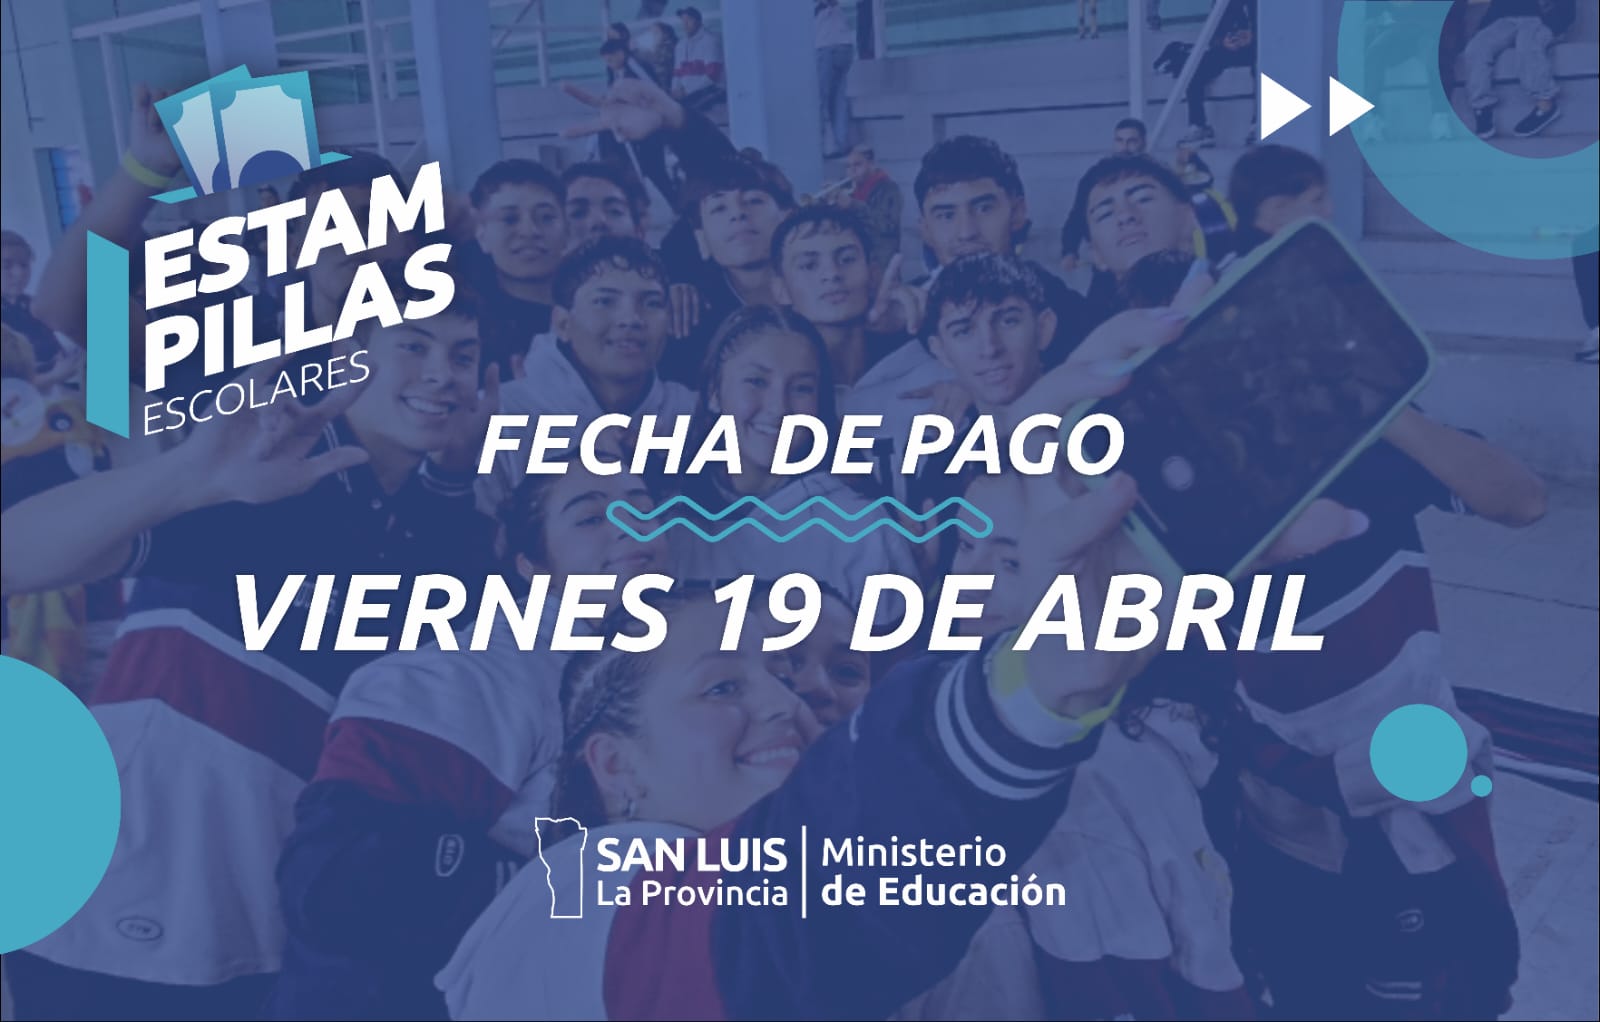 You are currently viewing “Logro Educativo: Más de 2.400 Egresados del 2023 Reciben Estampillas Escolares este Viernes”